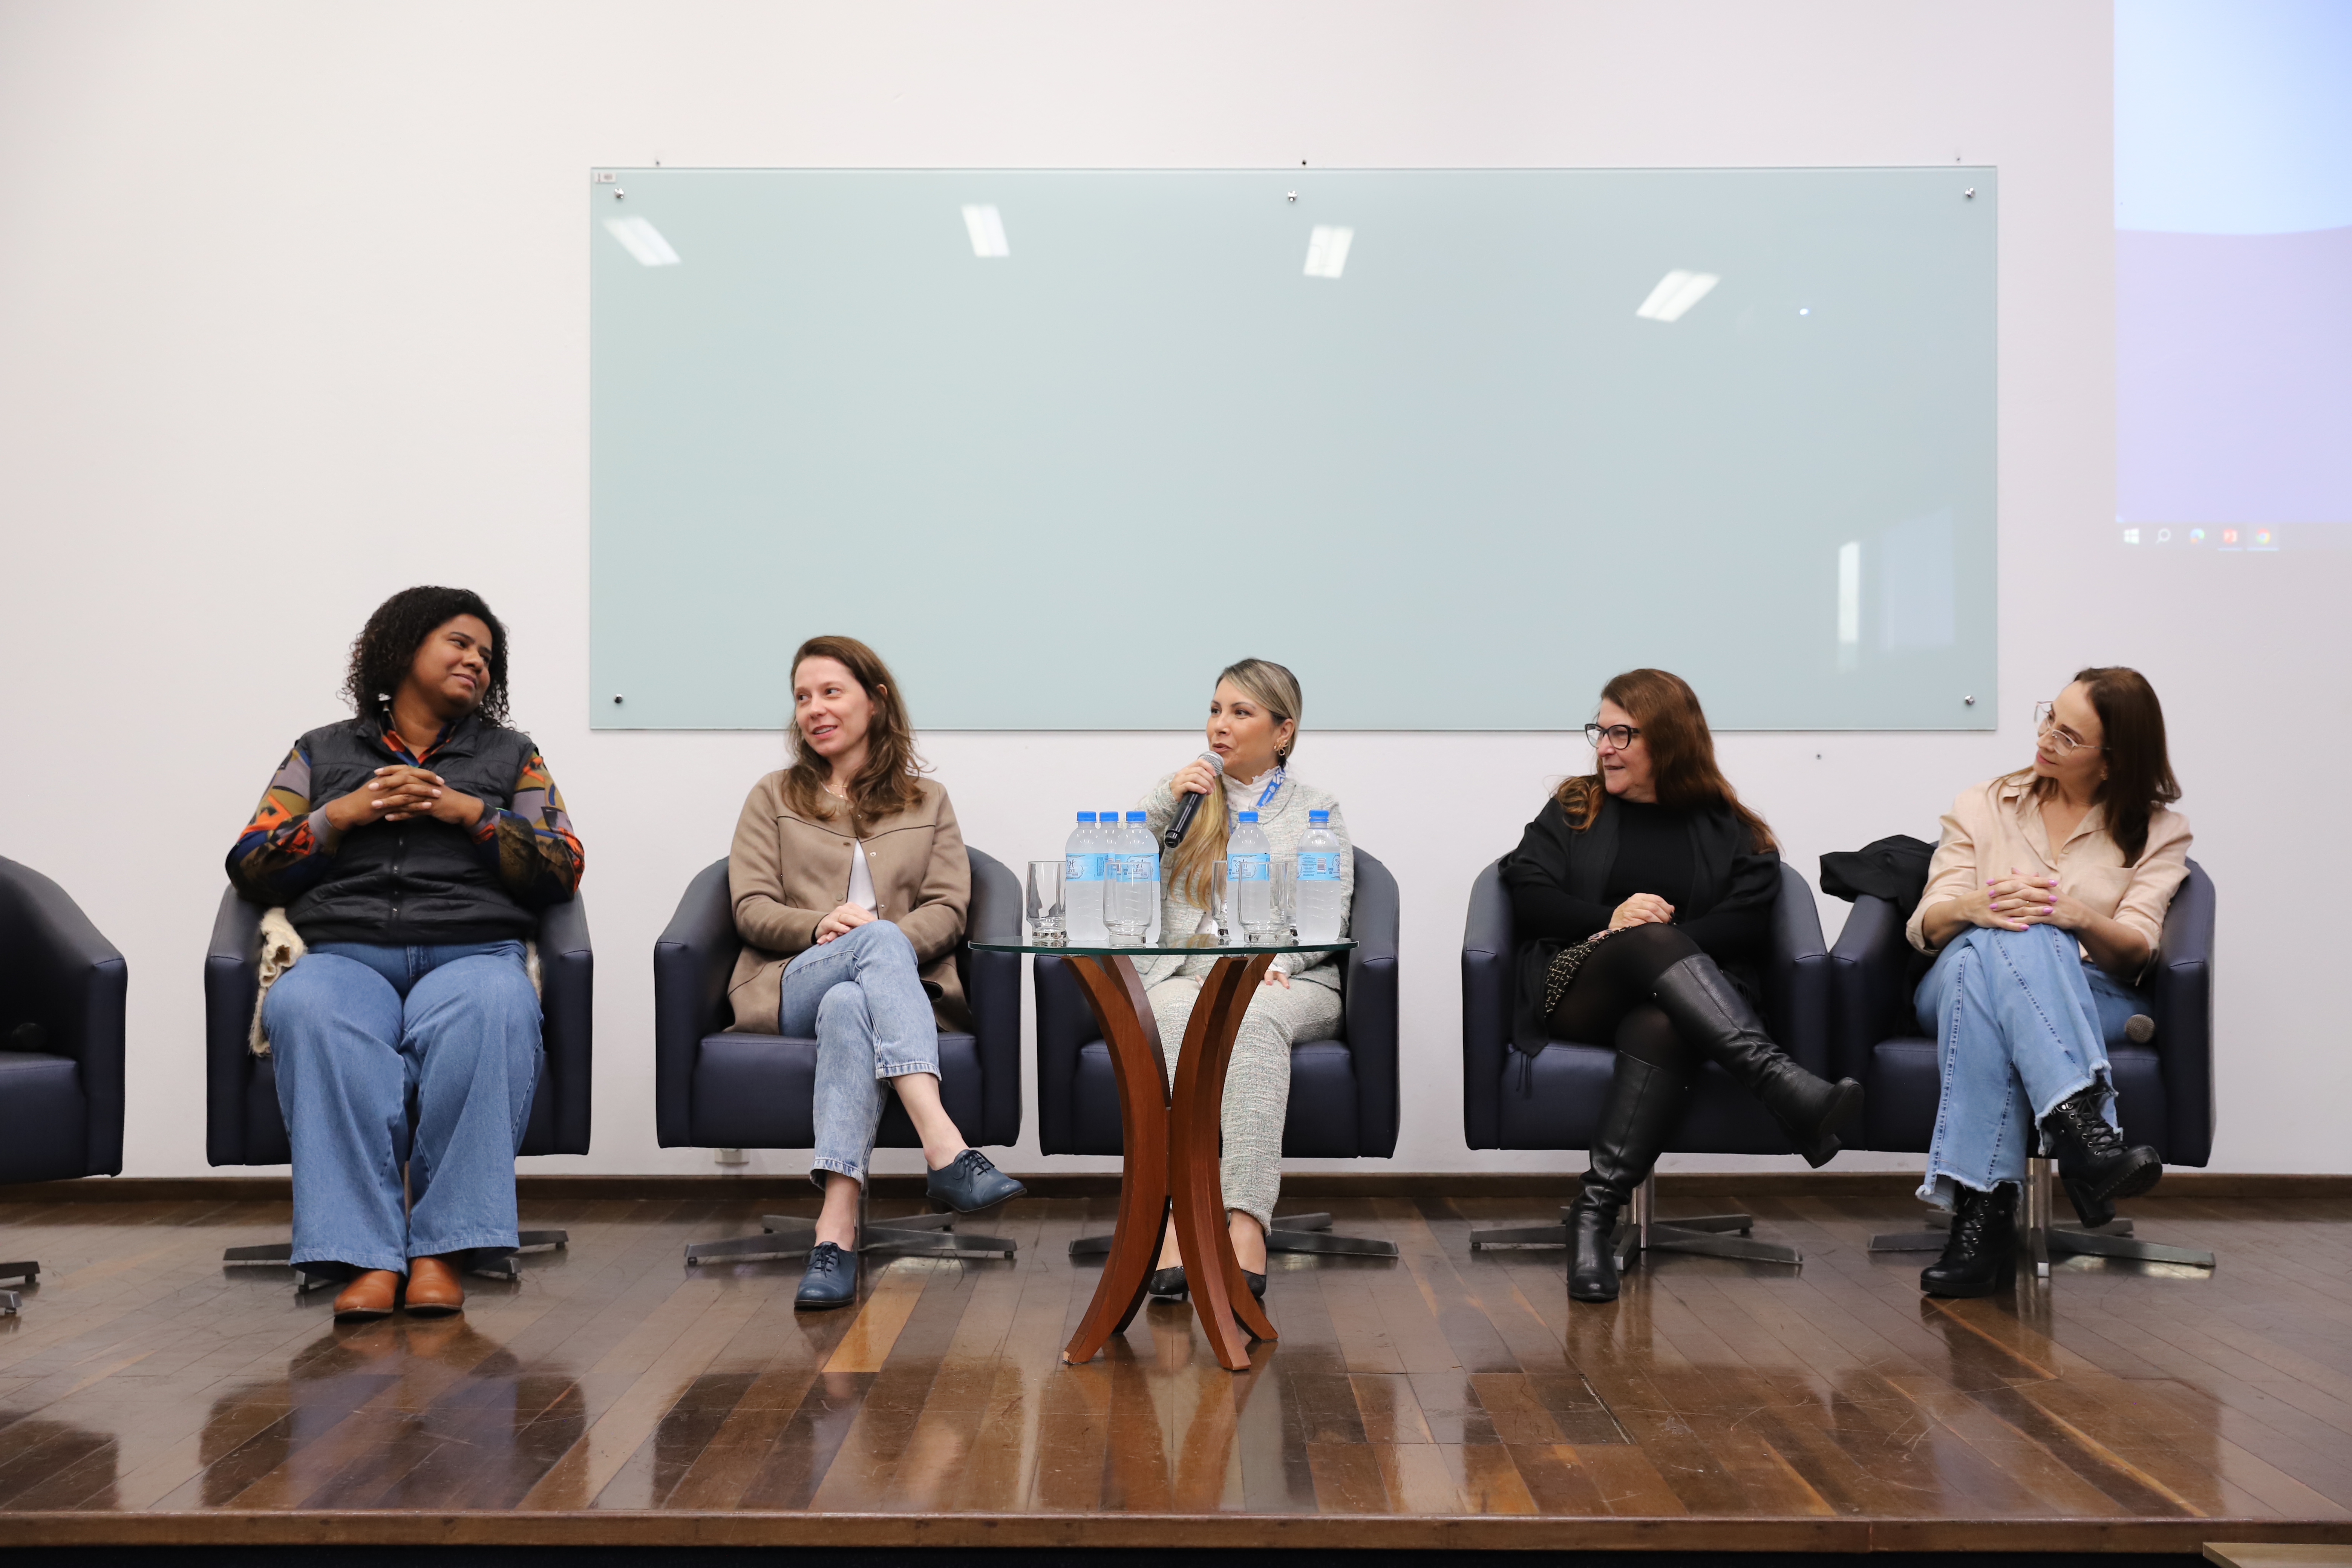 Roda de conversa reúne mulheres e estudantes para debate sobre posições sociais, no Colégio UNIFEBE